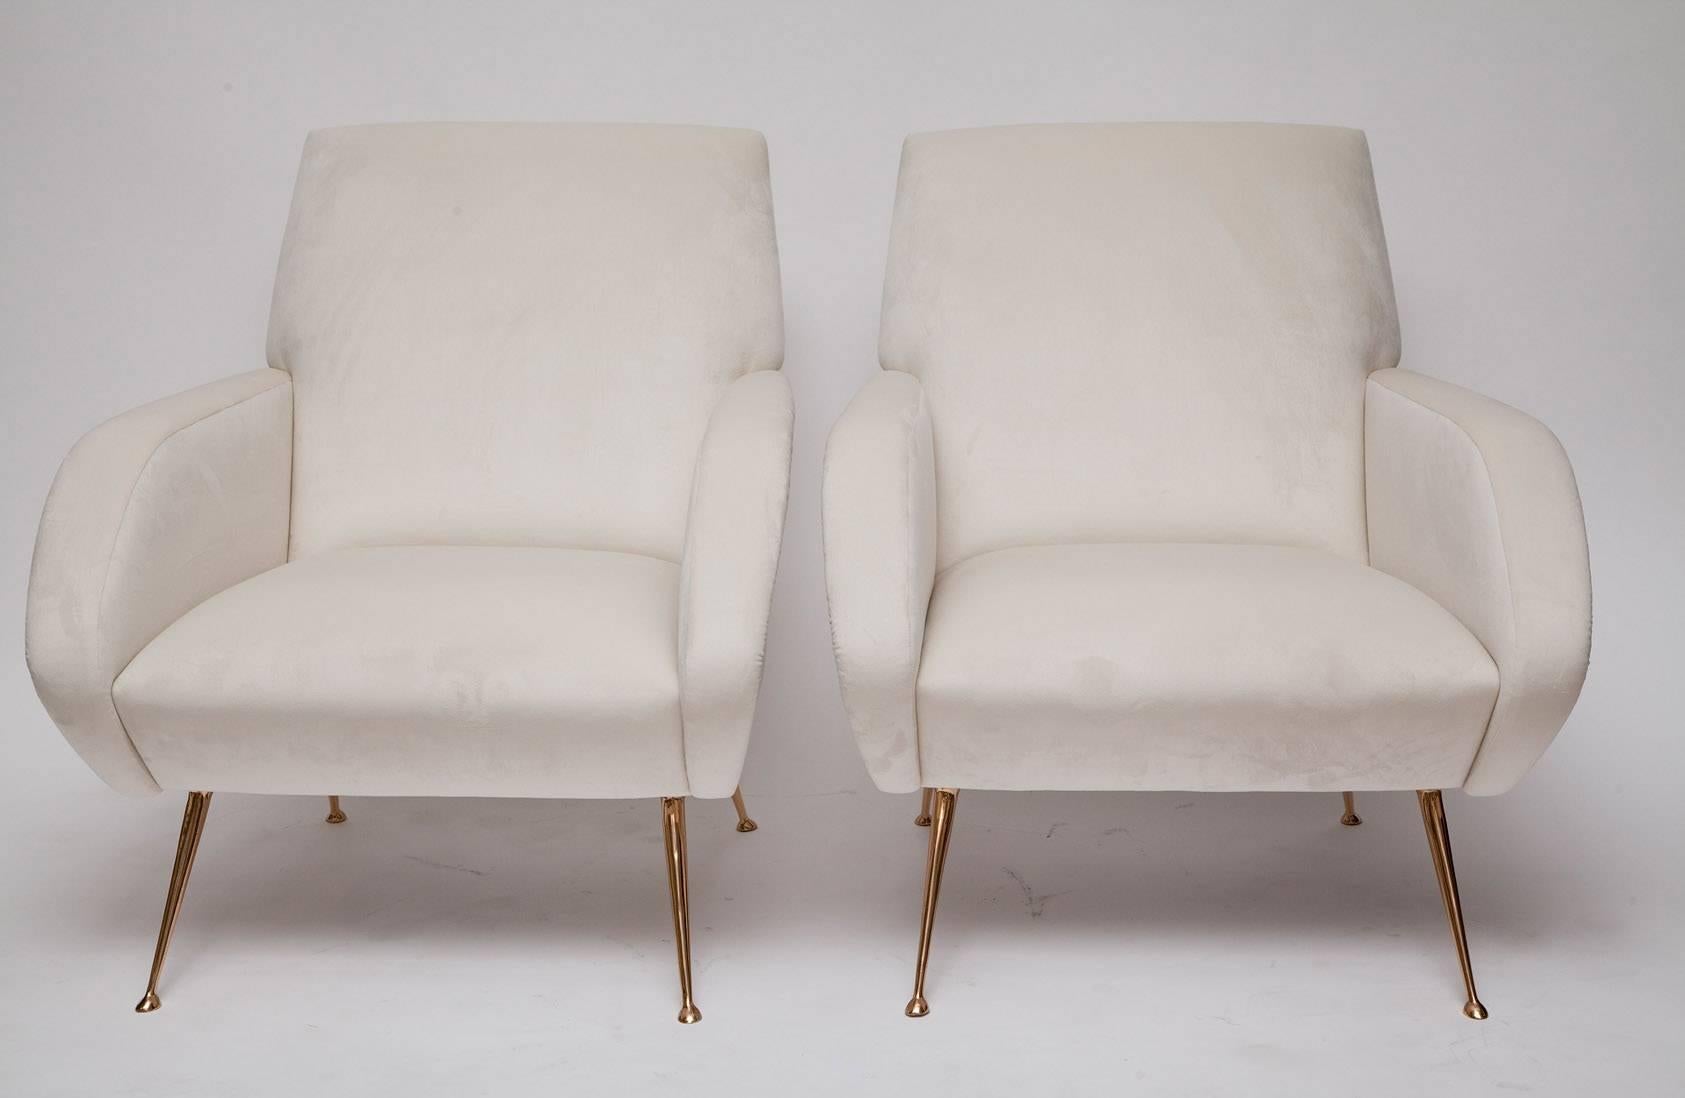 Inspirée par le design italien des années 1950 et exclusive à nous, la chaise Roma présente un style midcentury épuré et une taille adaptée à un appartement ou un boudoir. Banc fabriqué individuellement avec une construction en bois dur et des pieds